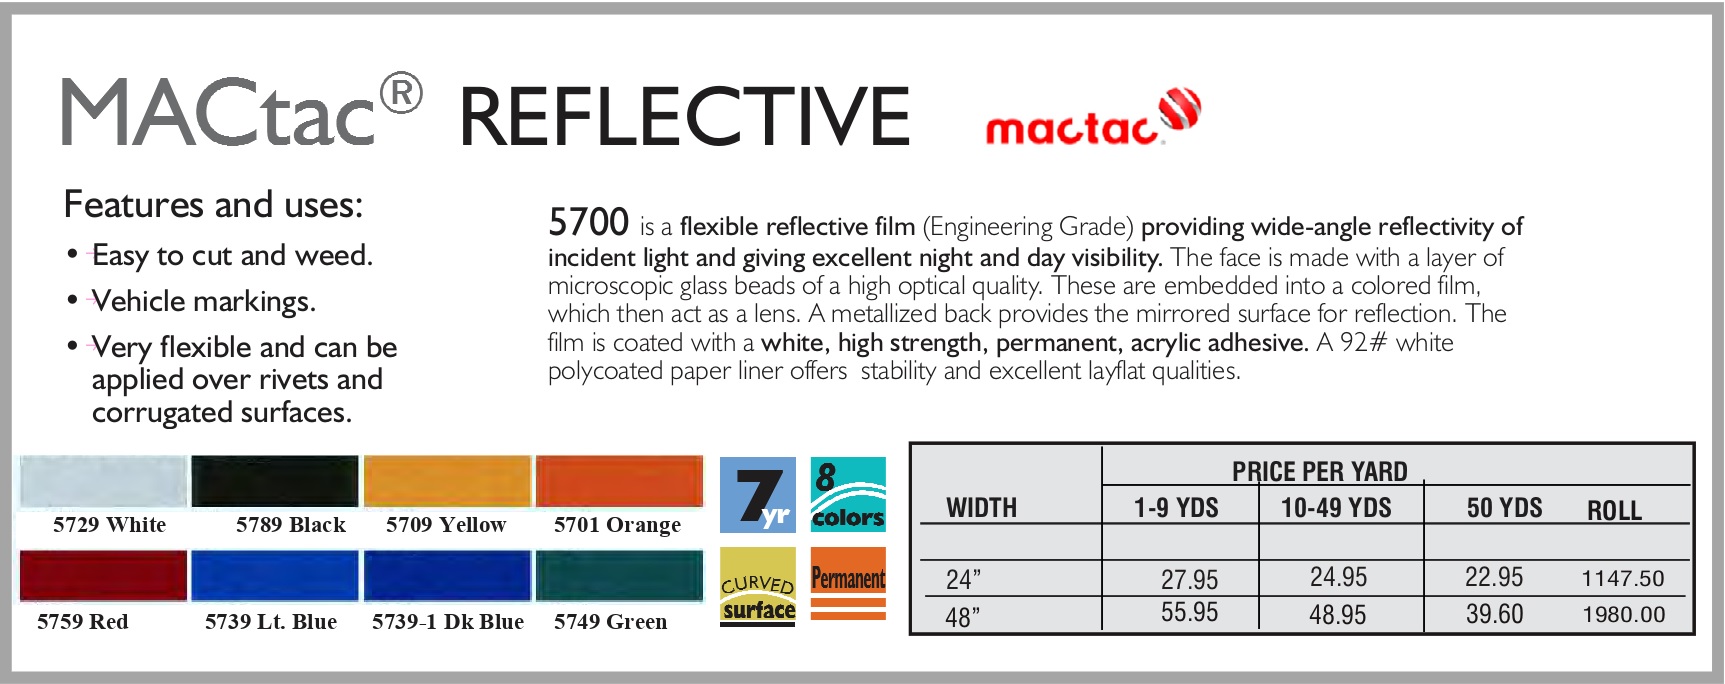 mactac reflective 1 - MacTac Reflective Vinyl